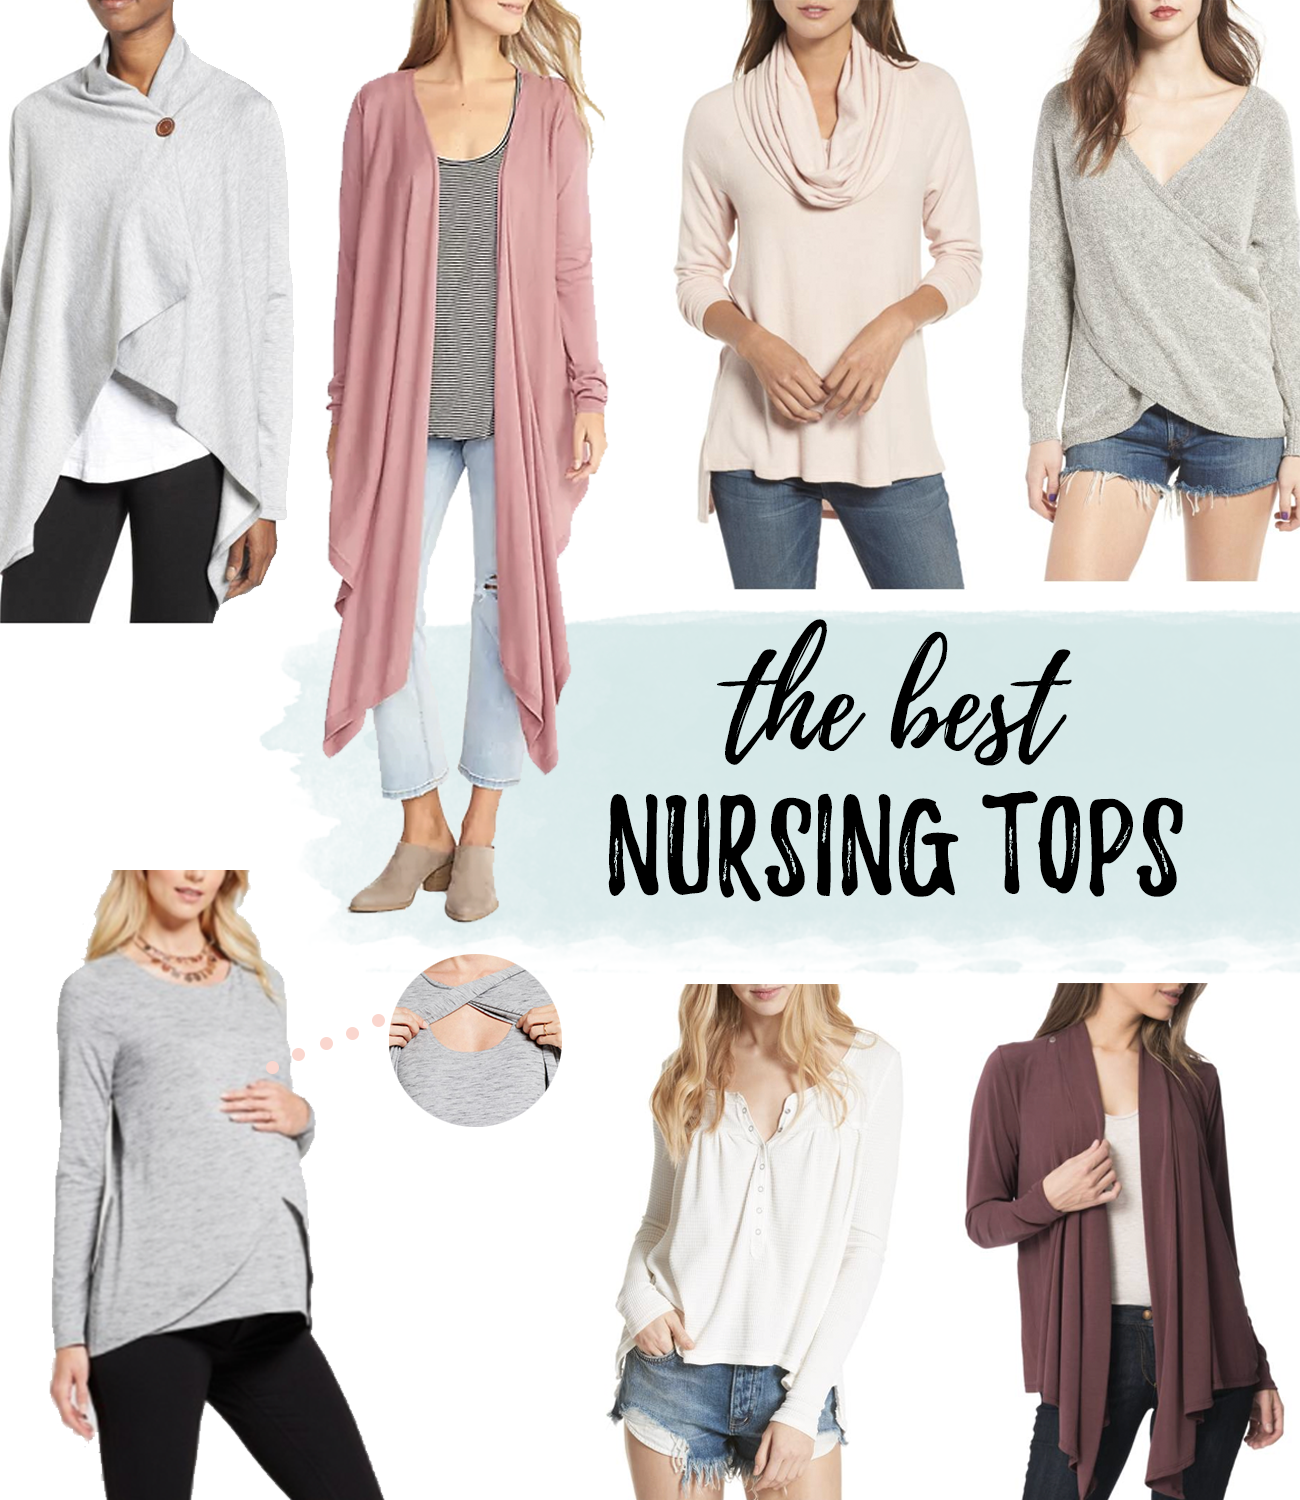 Stylish Nursing Shirts, Nursing Tops